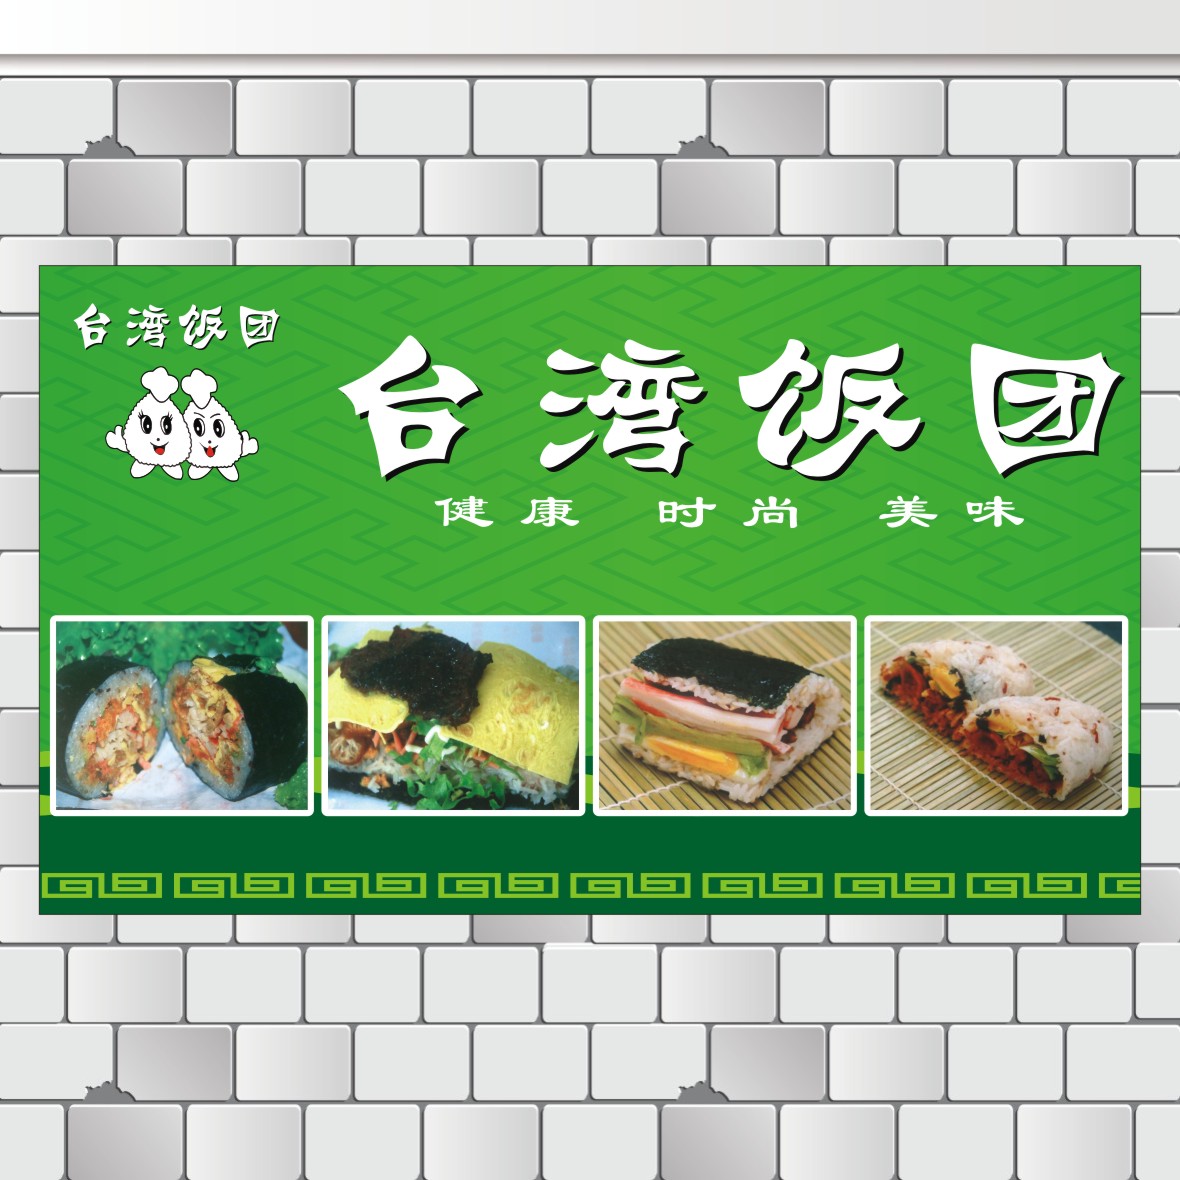 台湾饭团广告海报贴纸贴画寿司店小吃店快餐店海报制作贴画玻璃画